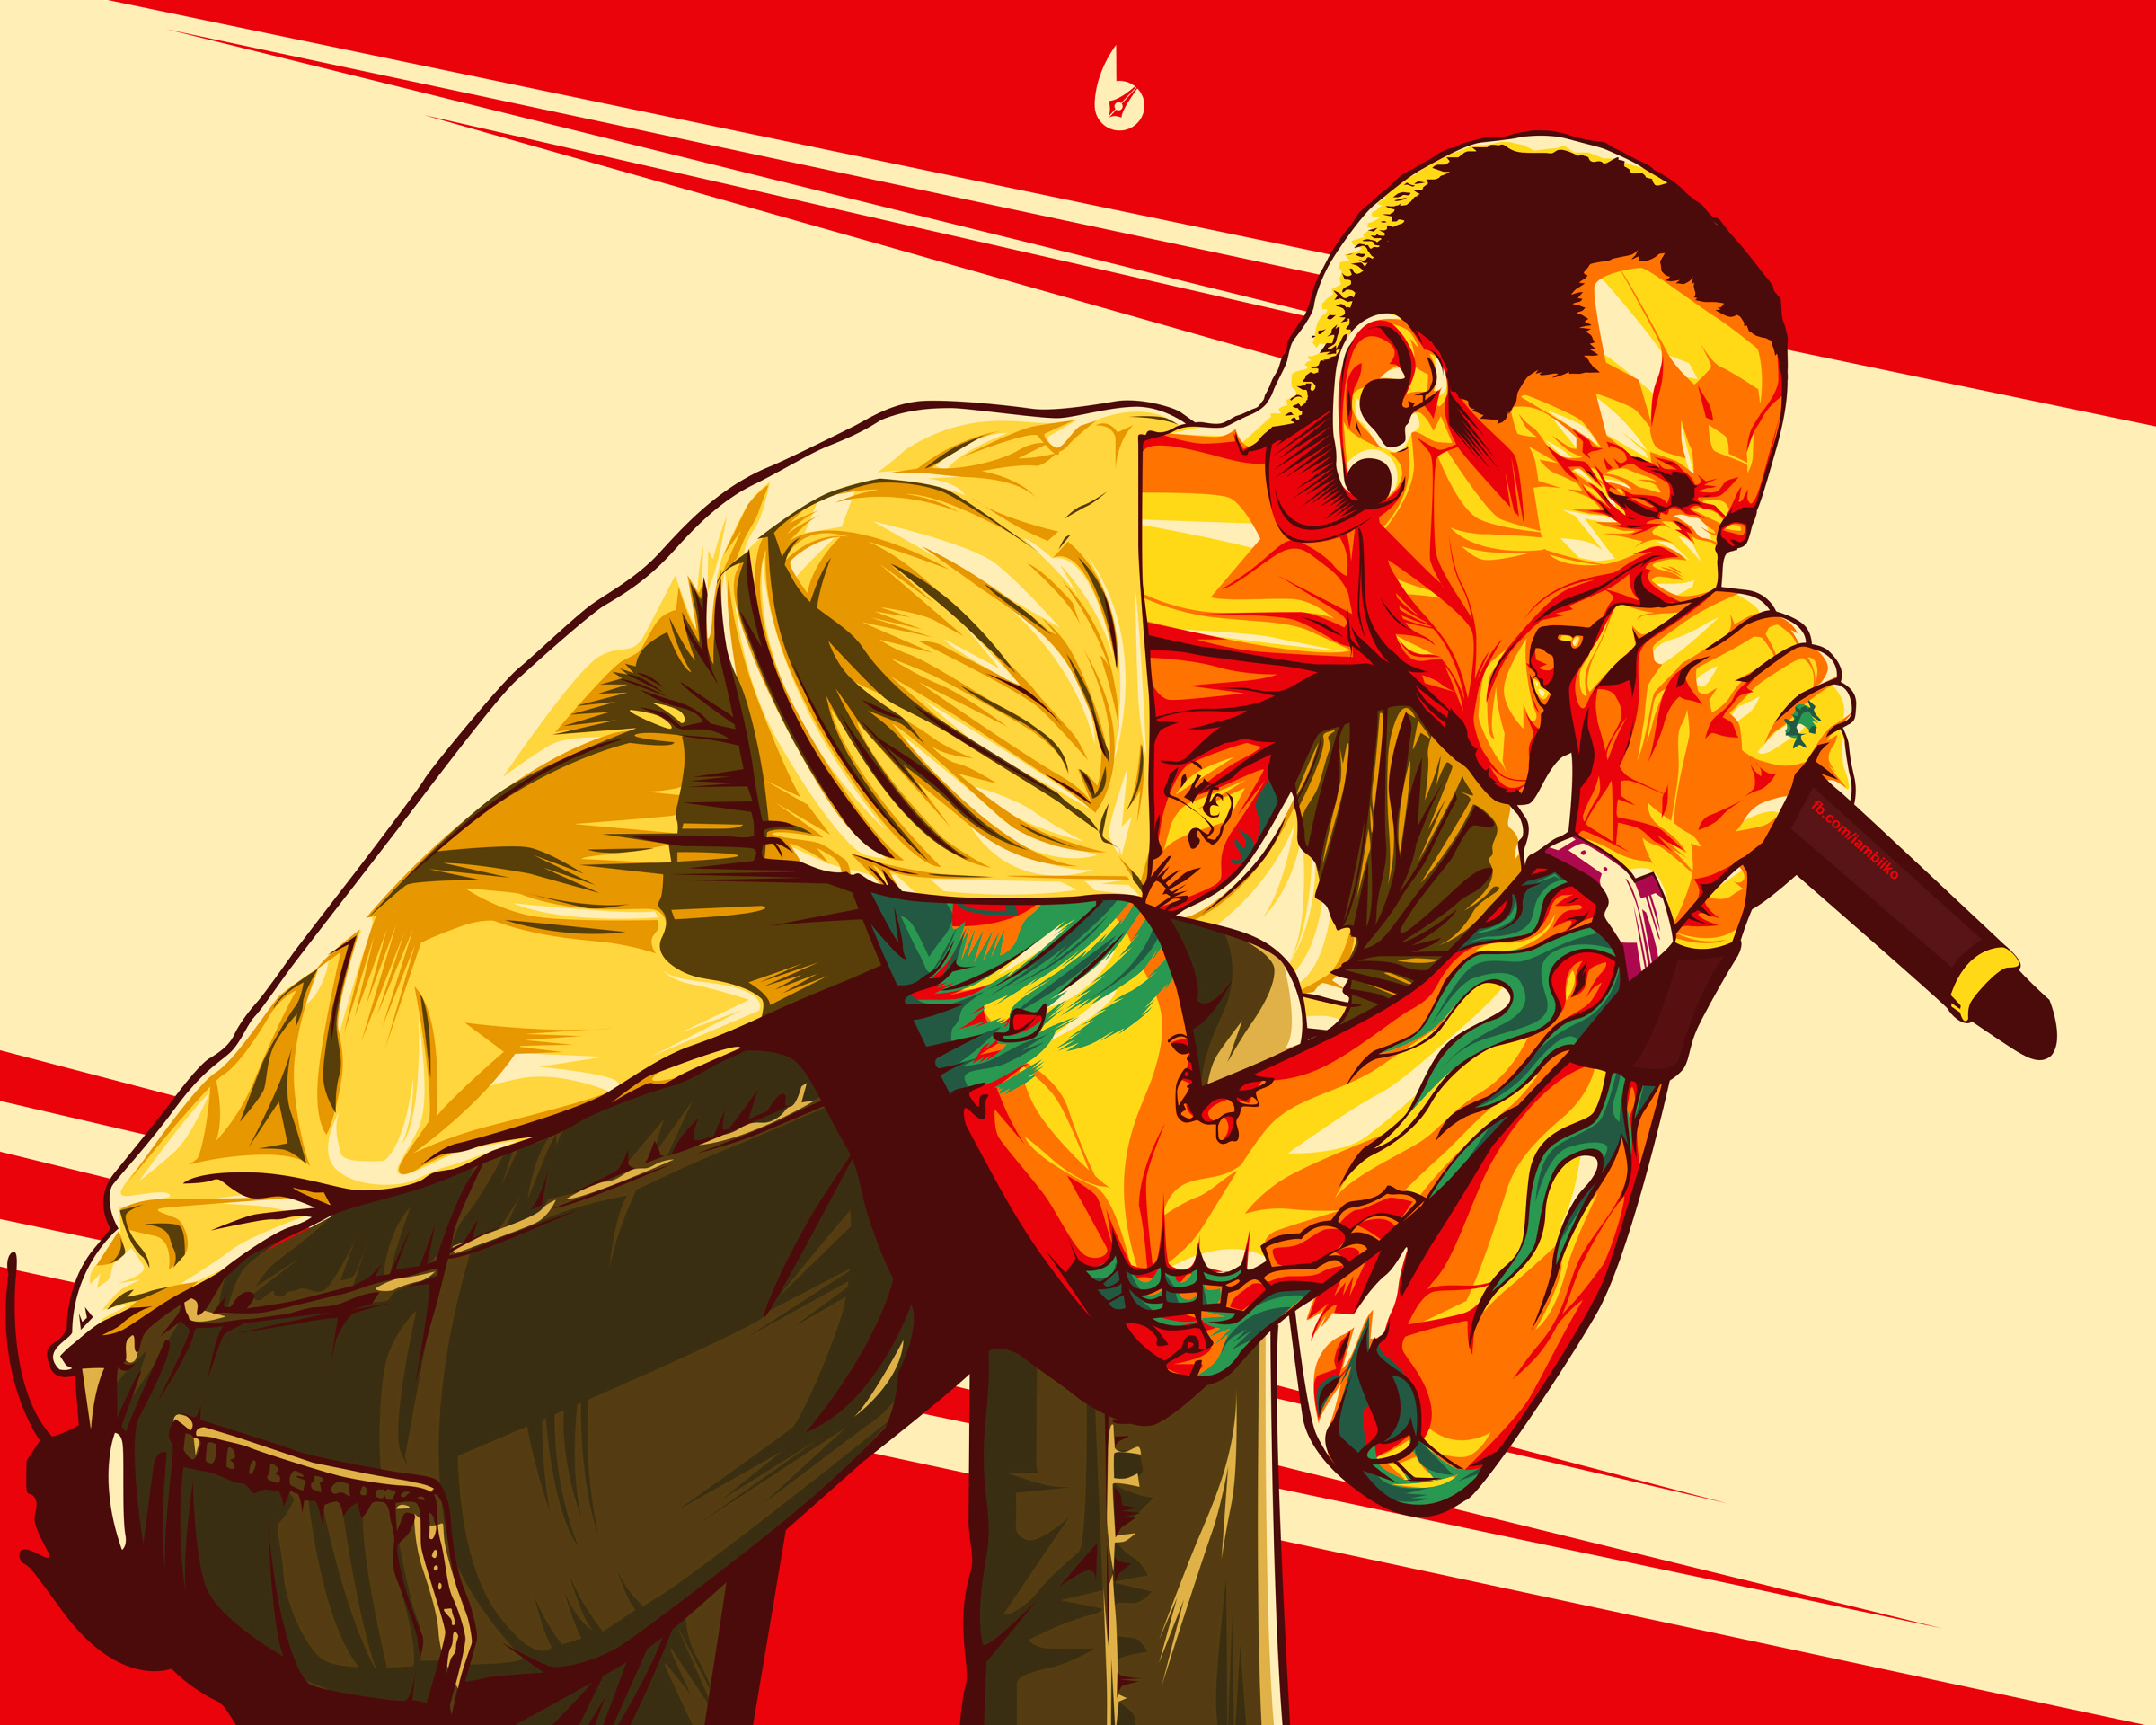 Baixe gratuitamente a imagem Música, Linkin Park na área de trabalho do seu PC